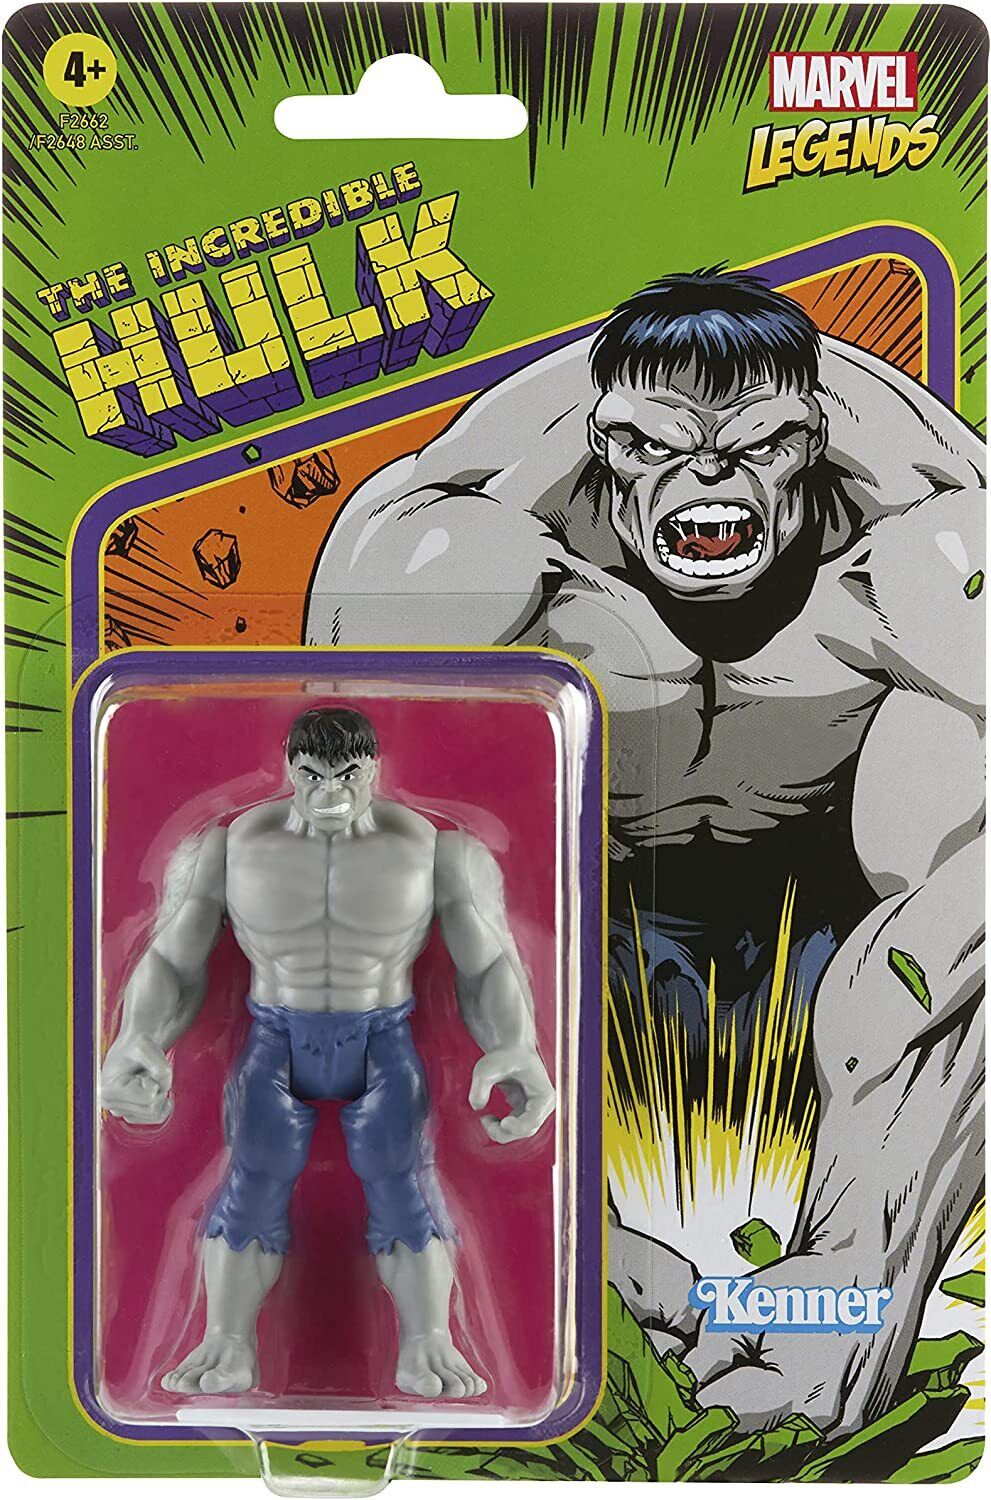 Figurine Hulk, 1 unité – Marvel : Cadeaux pour tout petits